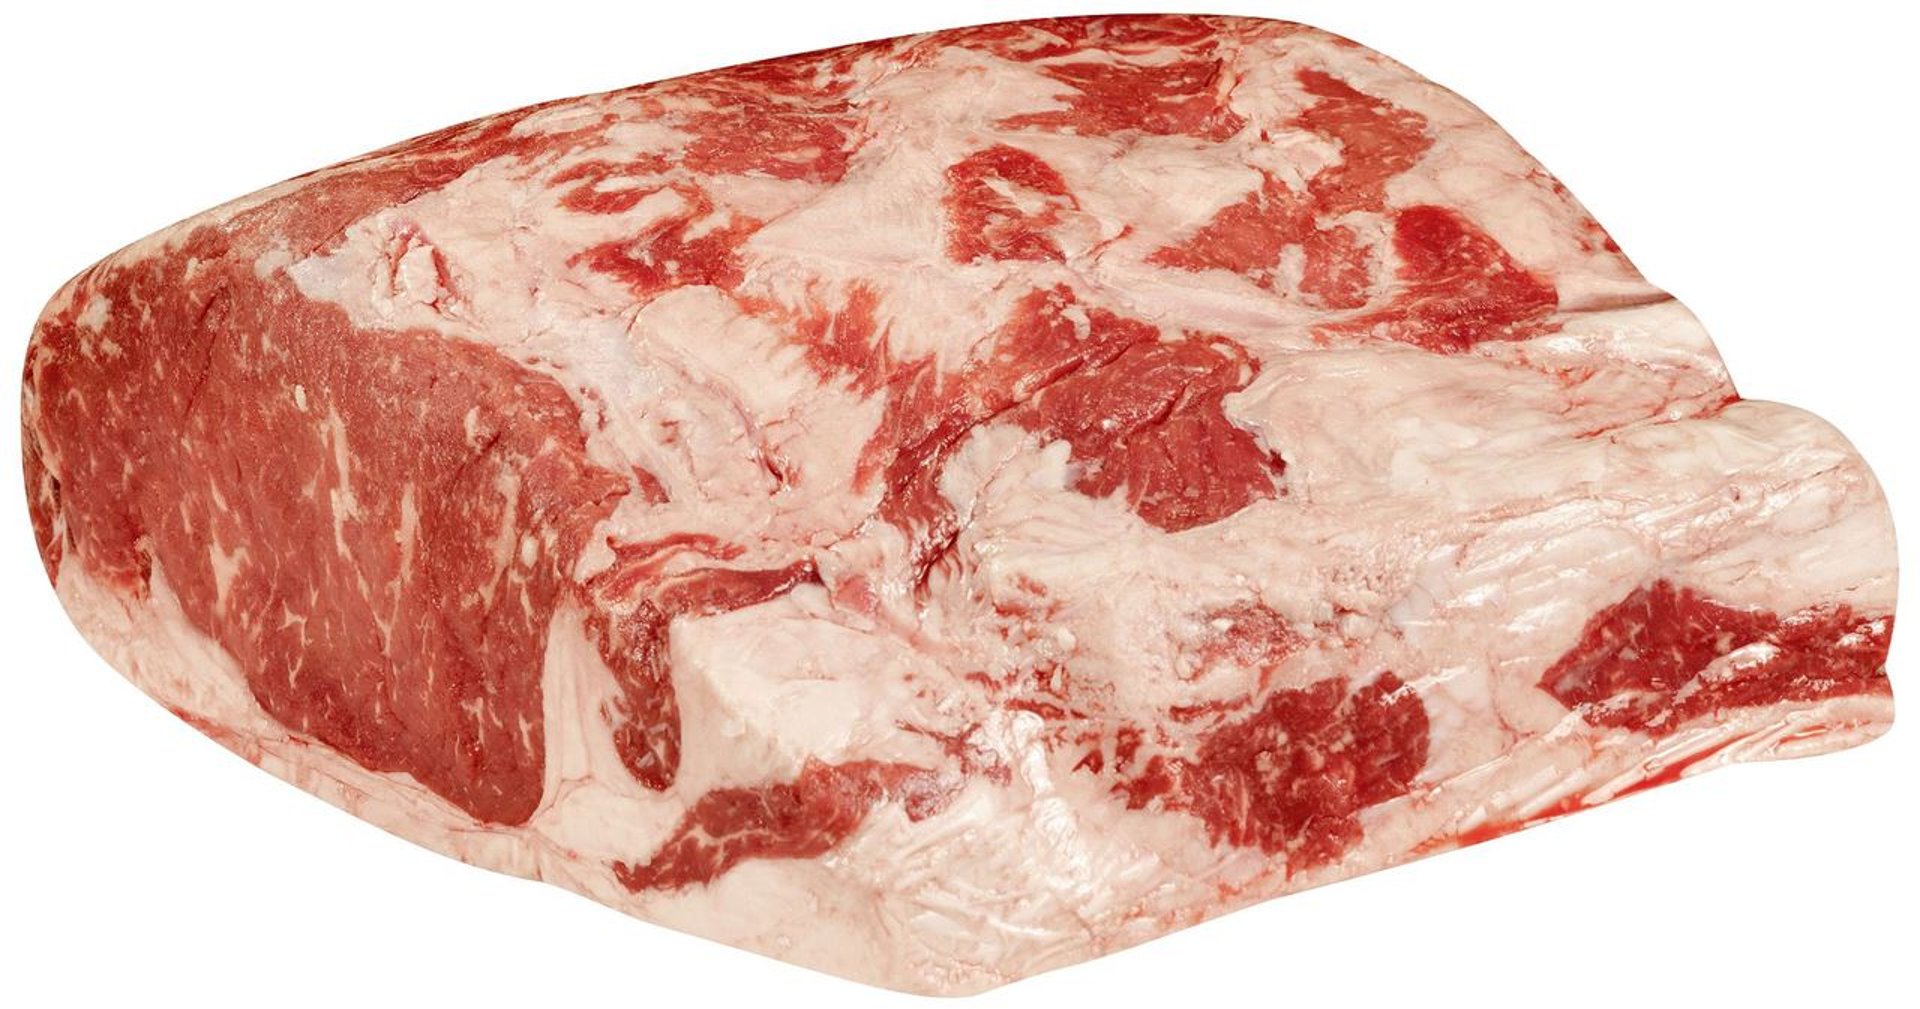 American Roastbeef vorgereift, halbe Stücke, ohne Knochen, vak.-verpackt ca. 2,5 kg